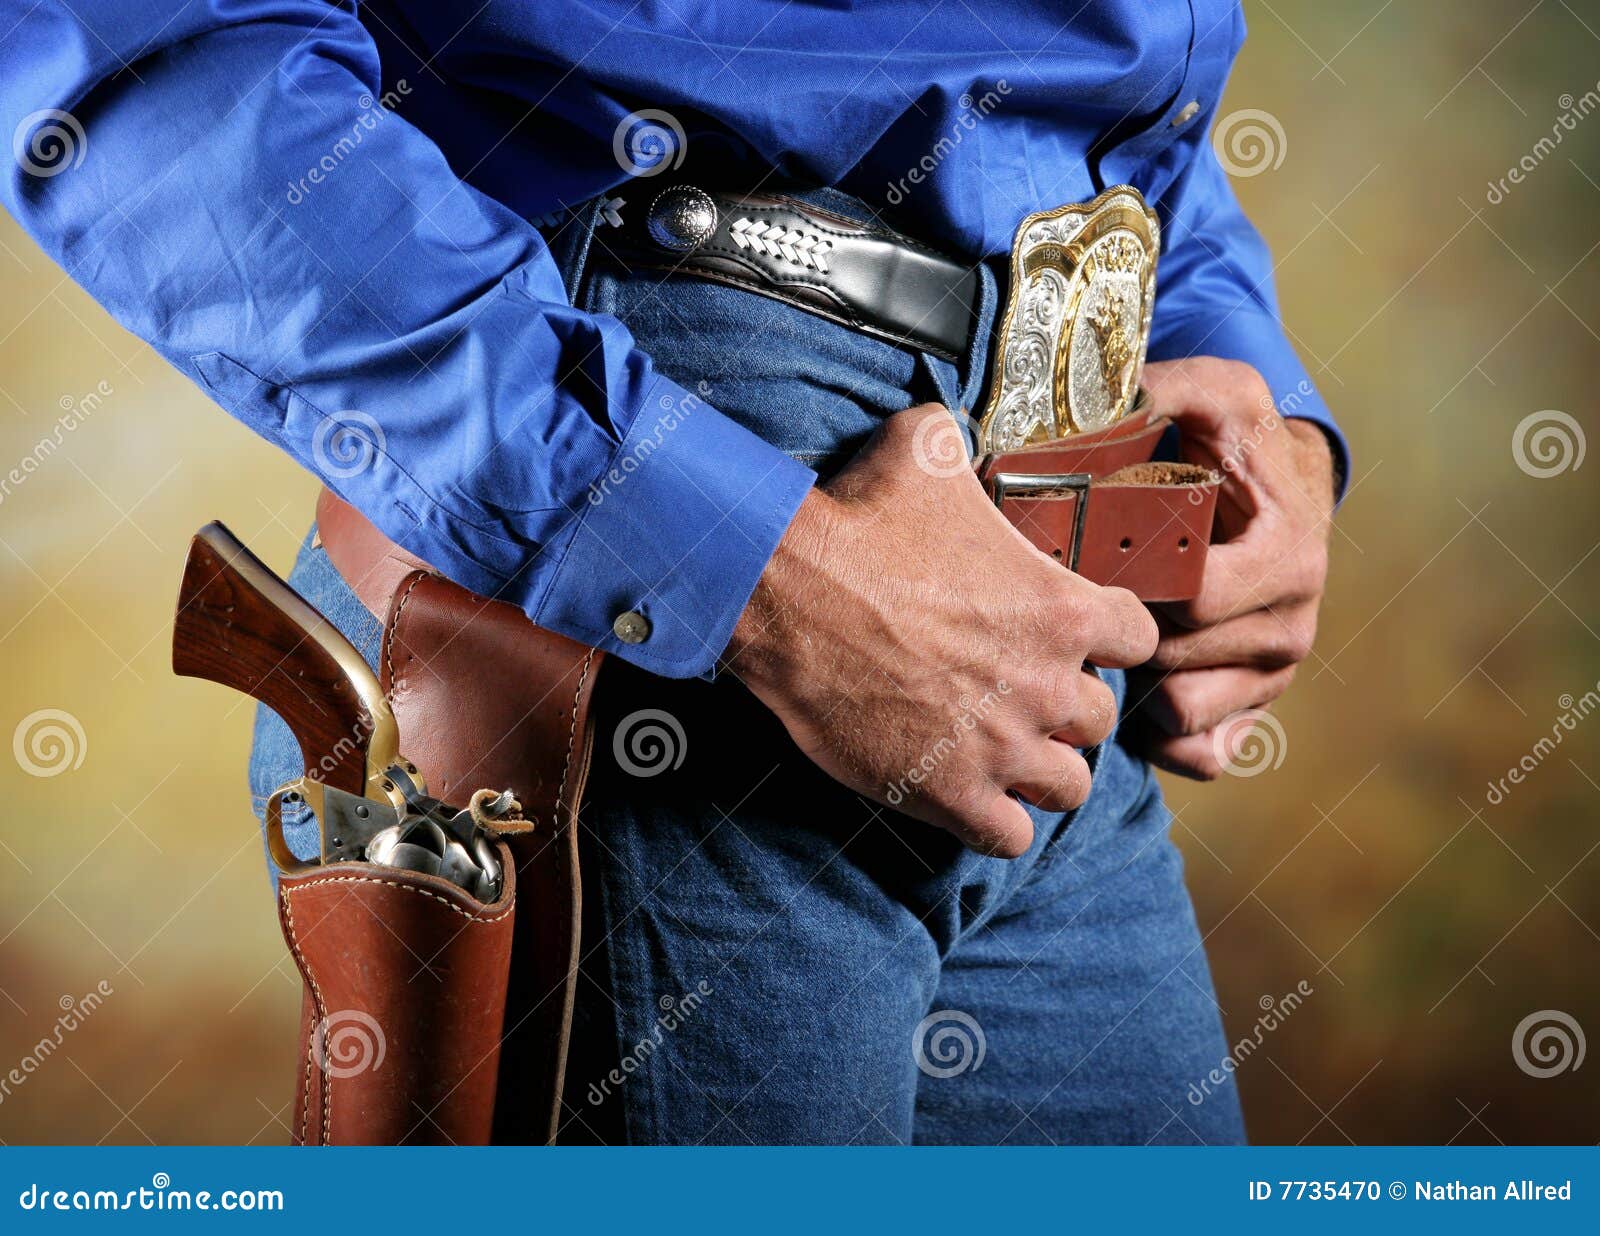 Cowboy stock photo. Image of confrontation, fashion, western - 7735470